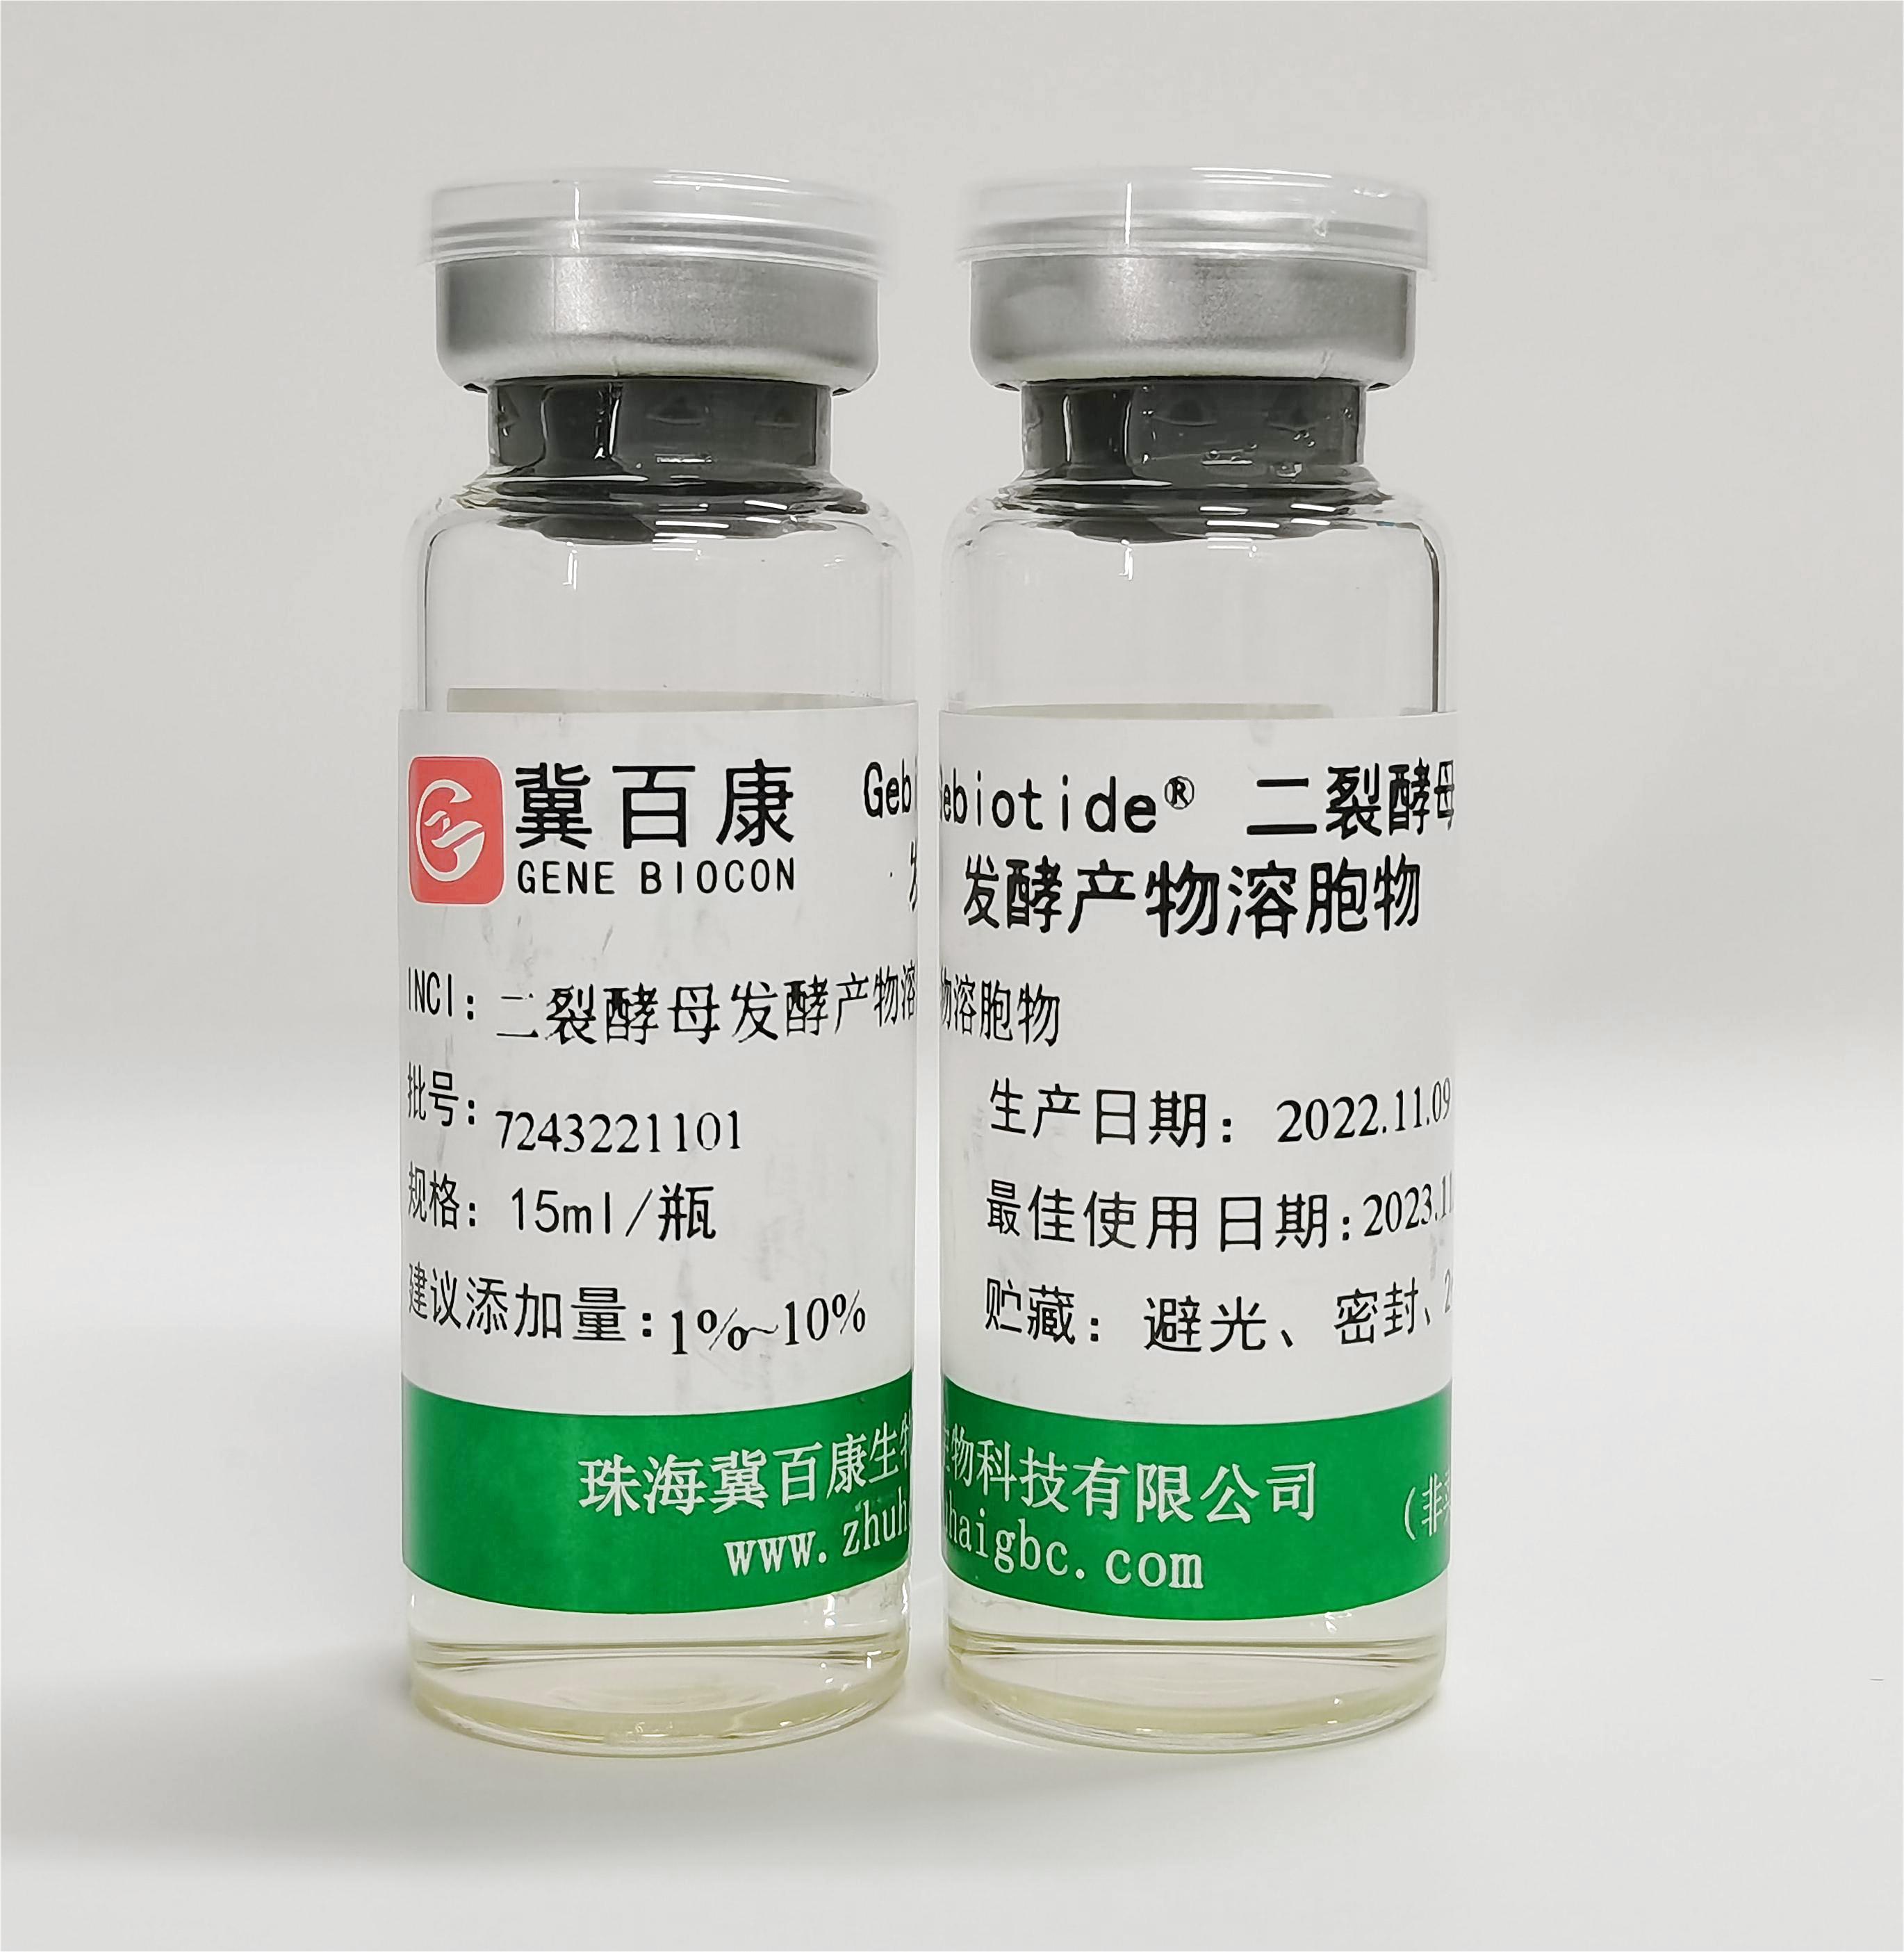 Gebiotide®二裂酵母发酵产物溶胞物